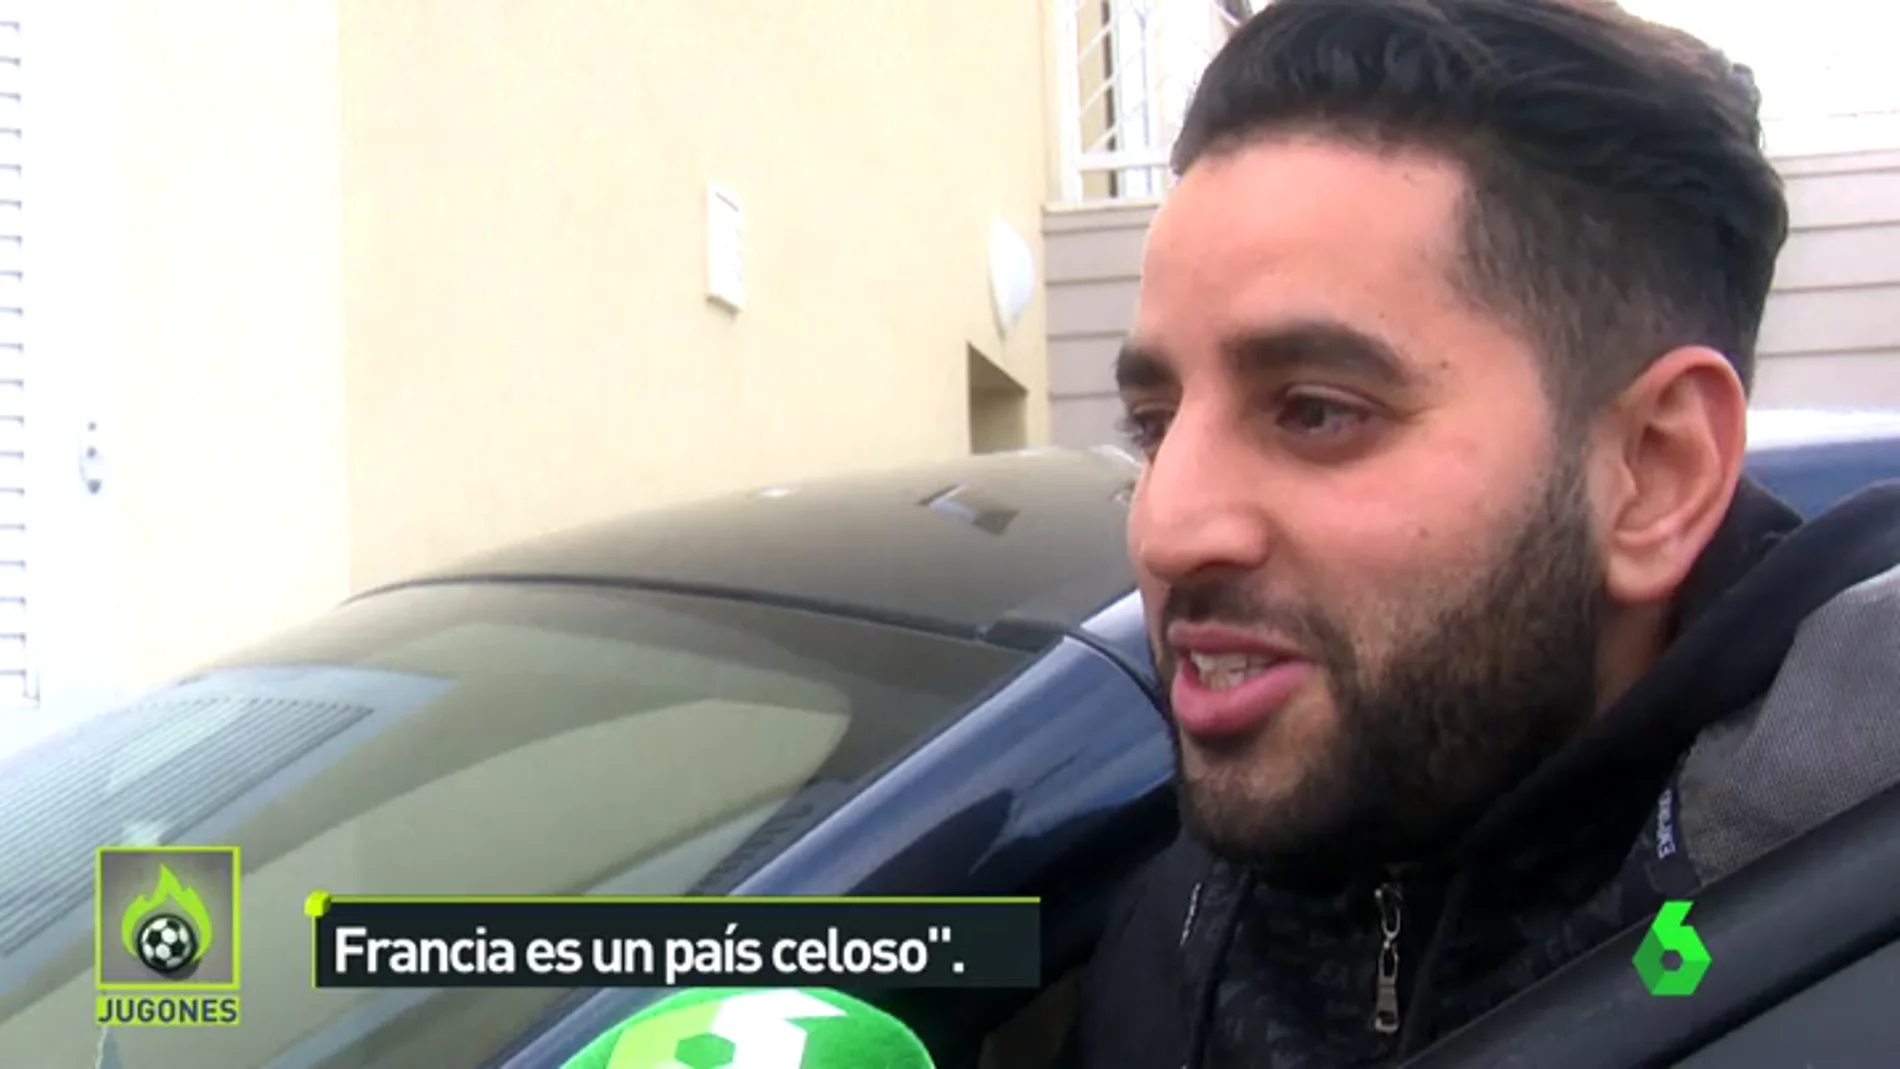 Los vecinos del barrio de origen de Benzema salen en su defensa: "Francia es un país celoso"